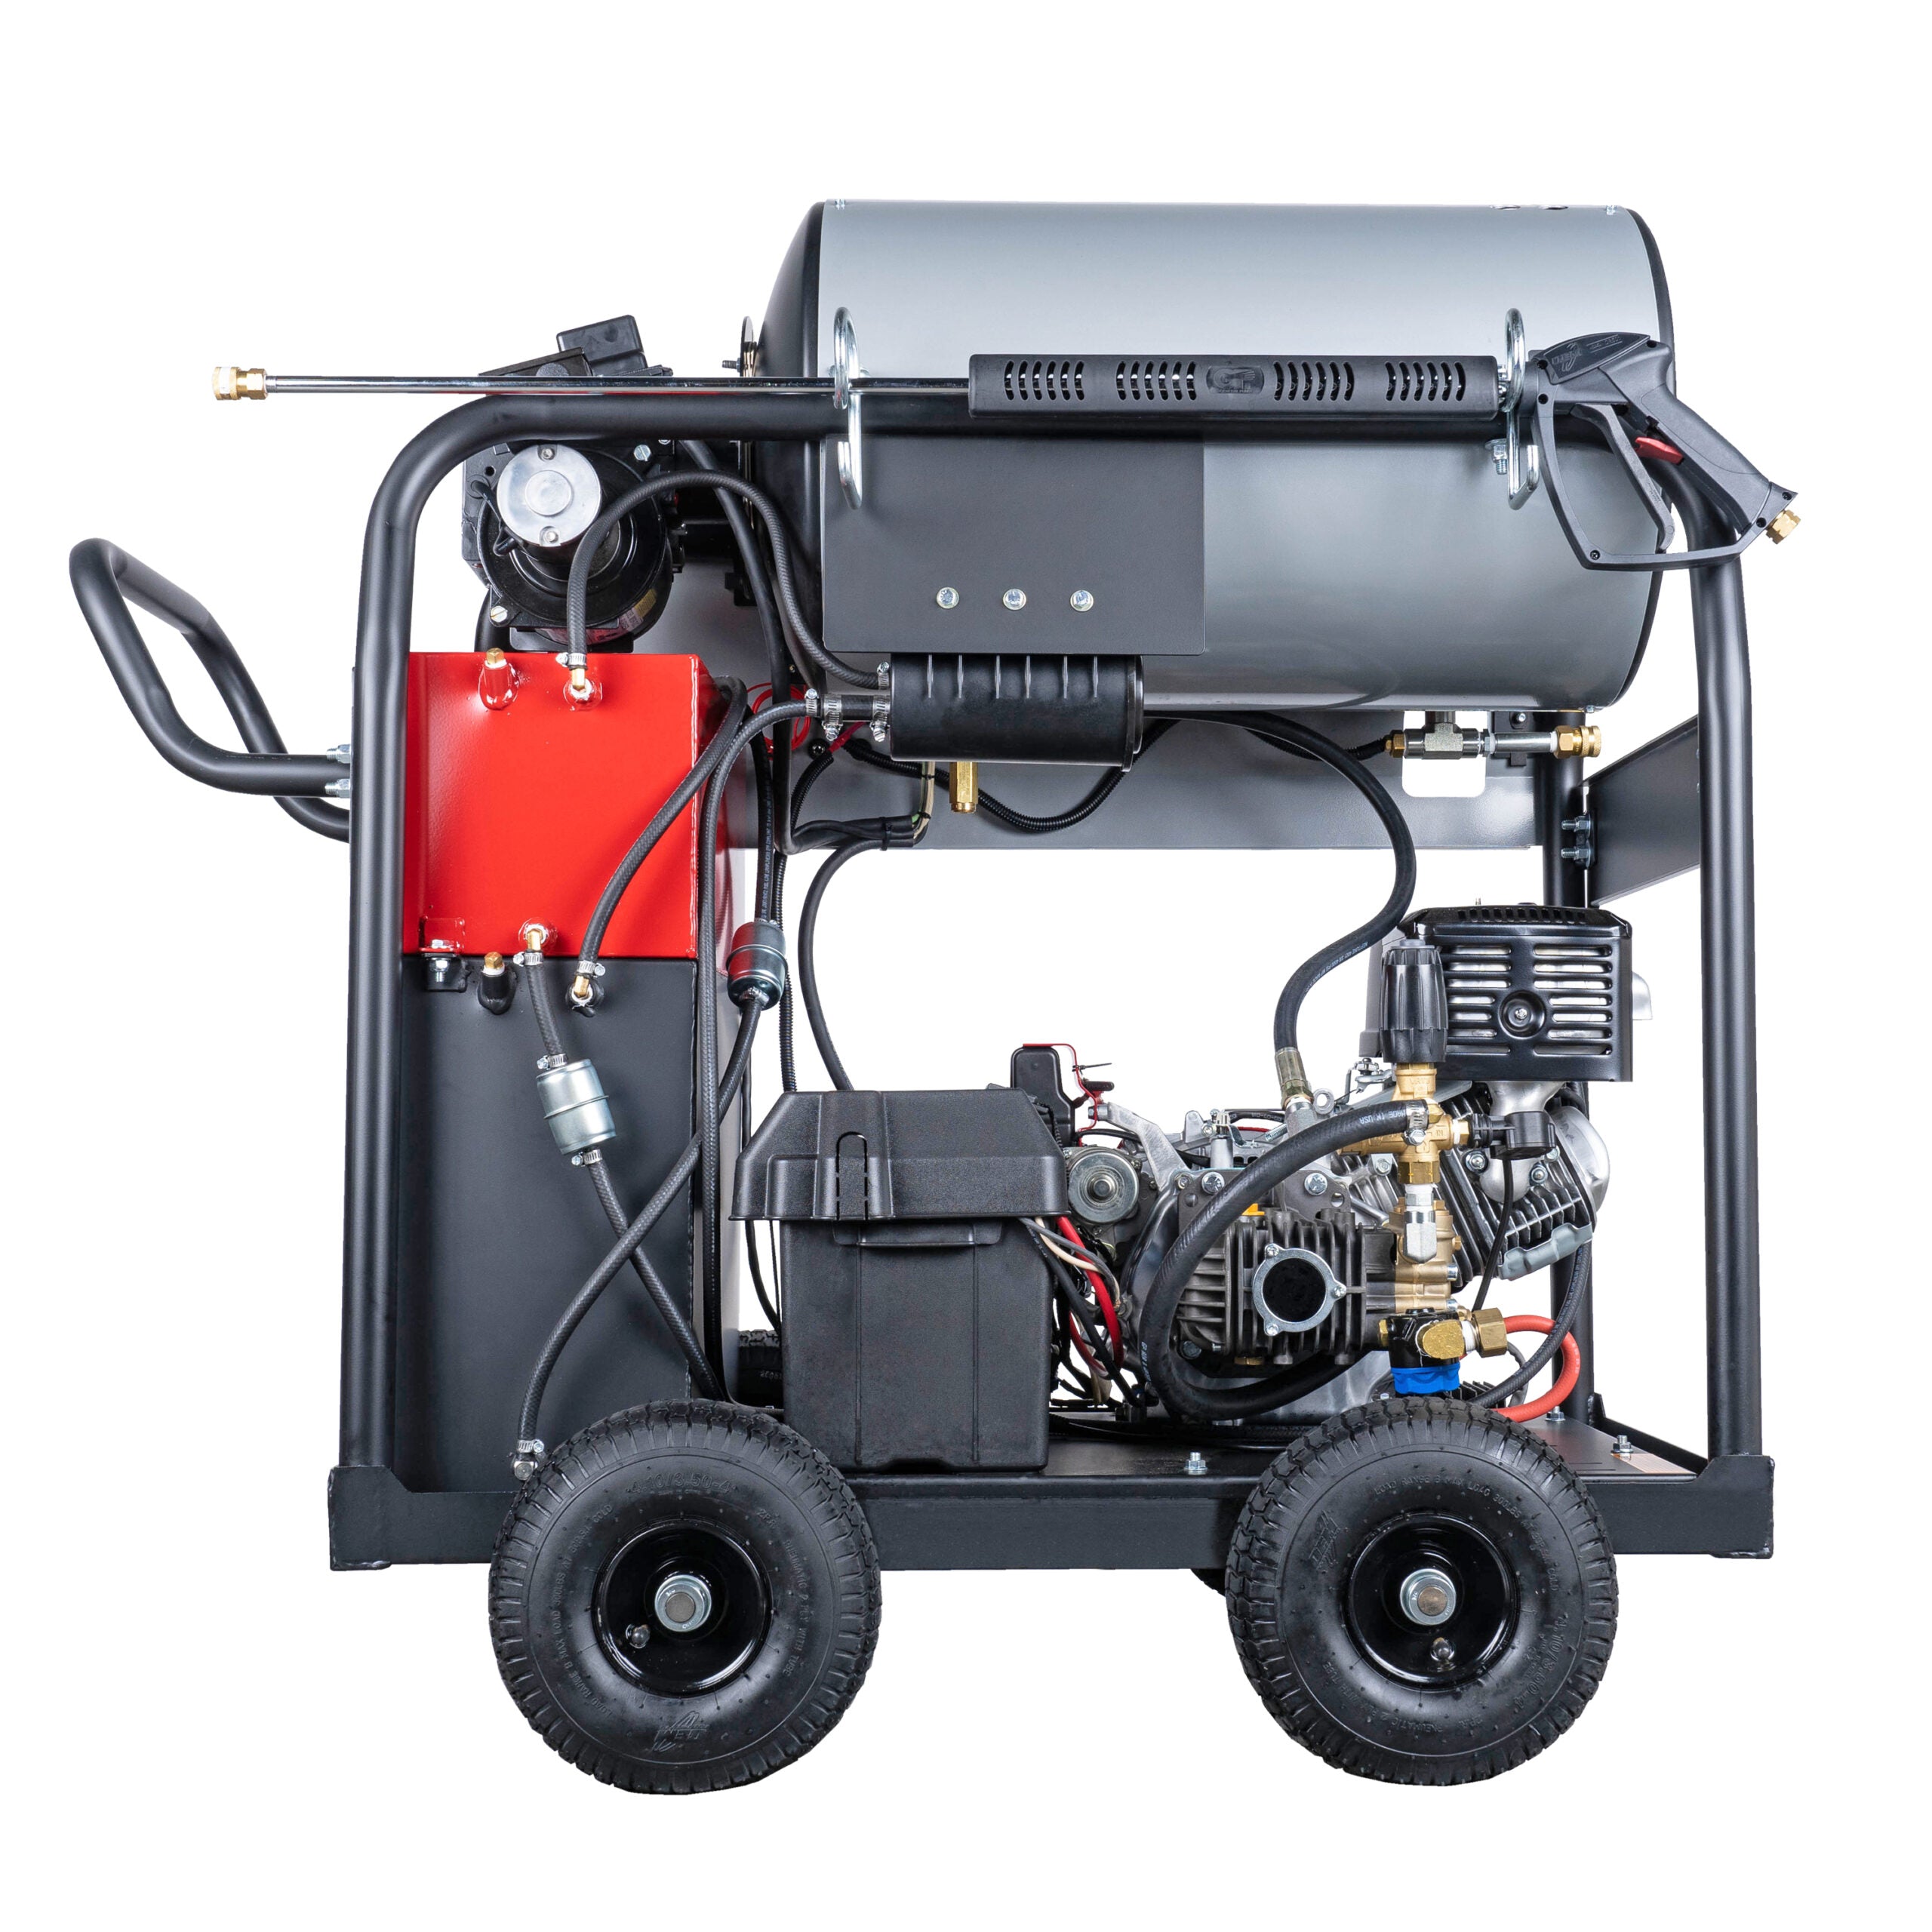 4000 PSI @ 4 GPM Direct Drive Honda GX390 Gas Hot Water Pressure Washer w/ Comet Pump (Big Brute)